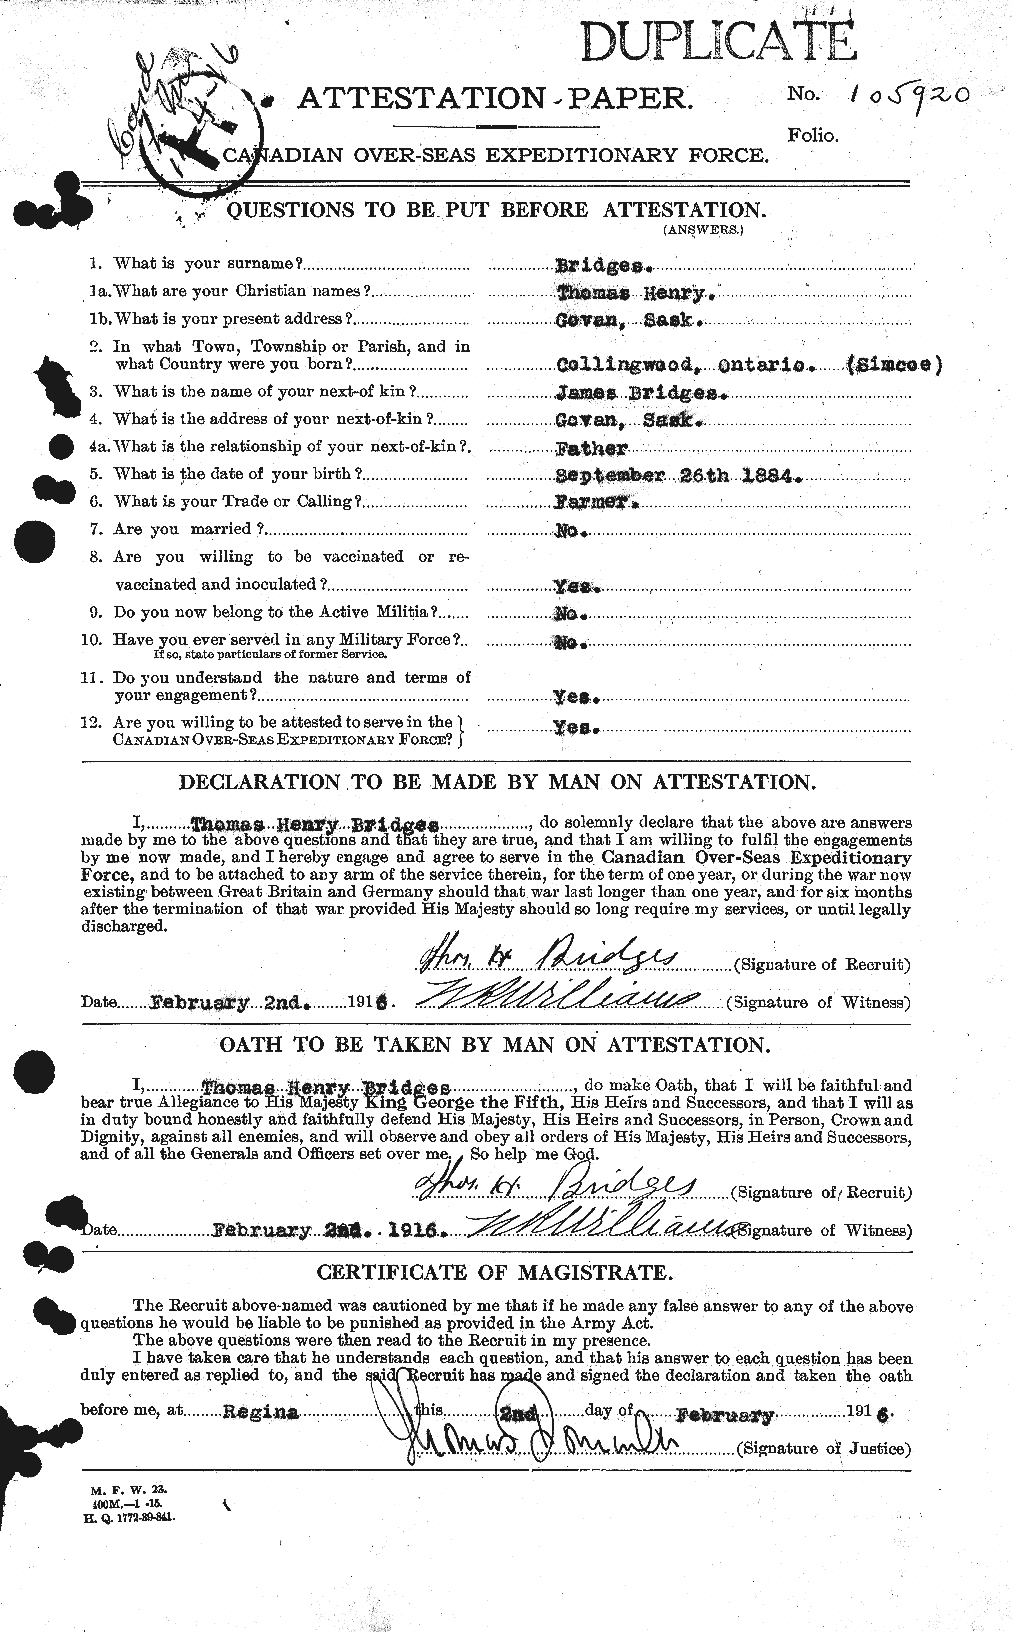 Dossiers du Personnel de la Première Guerre mondiale - CEC 259839a